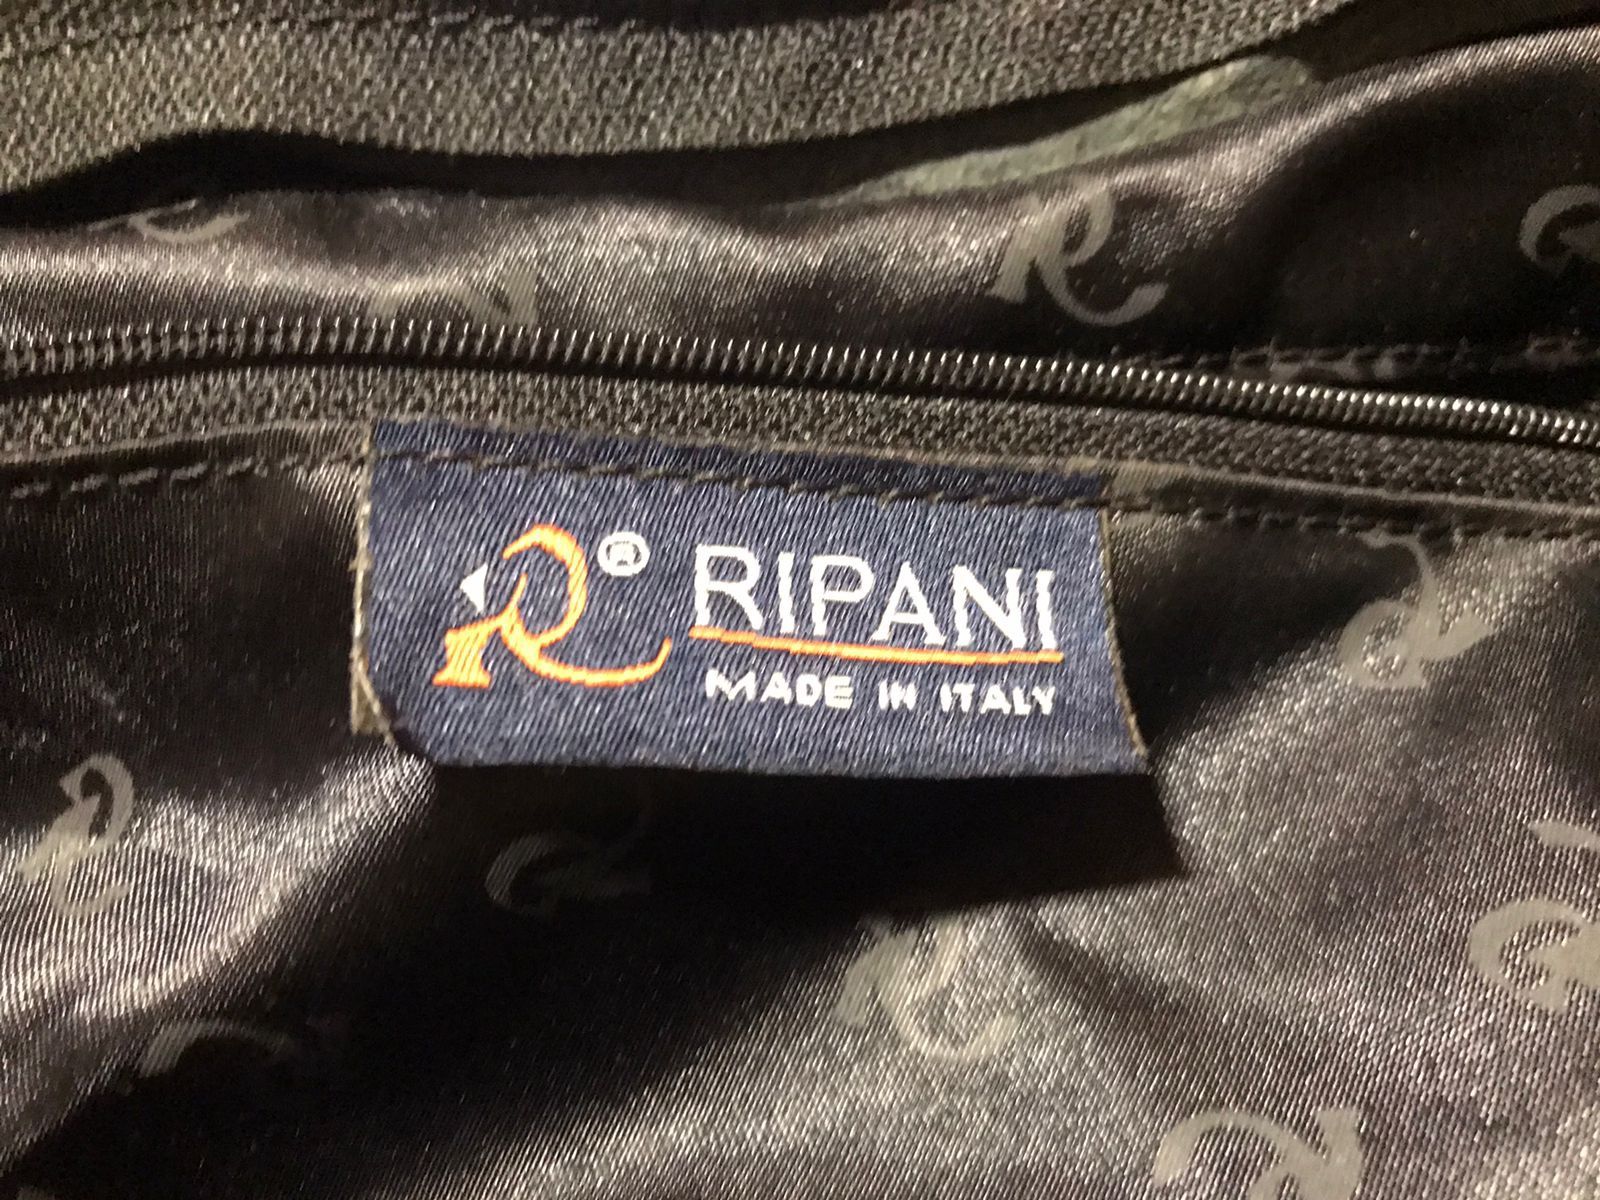 Продам кожаную сумку RIPANI(Италия) оригинал .Состояние б/у 
Цена 2000